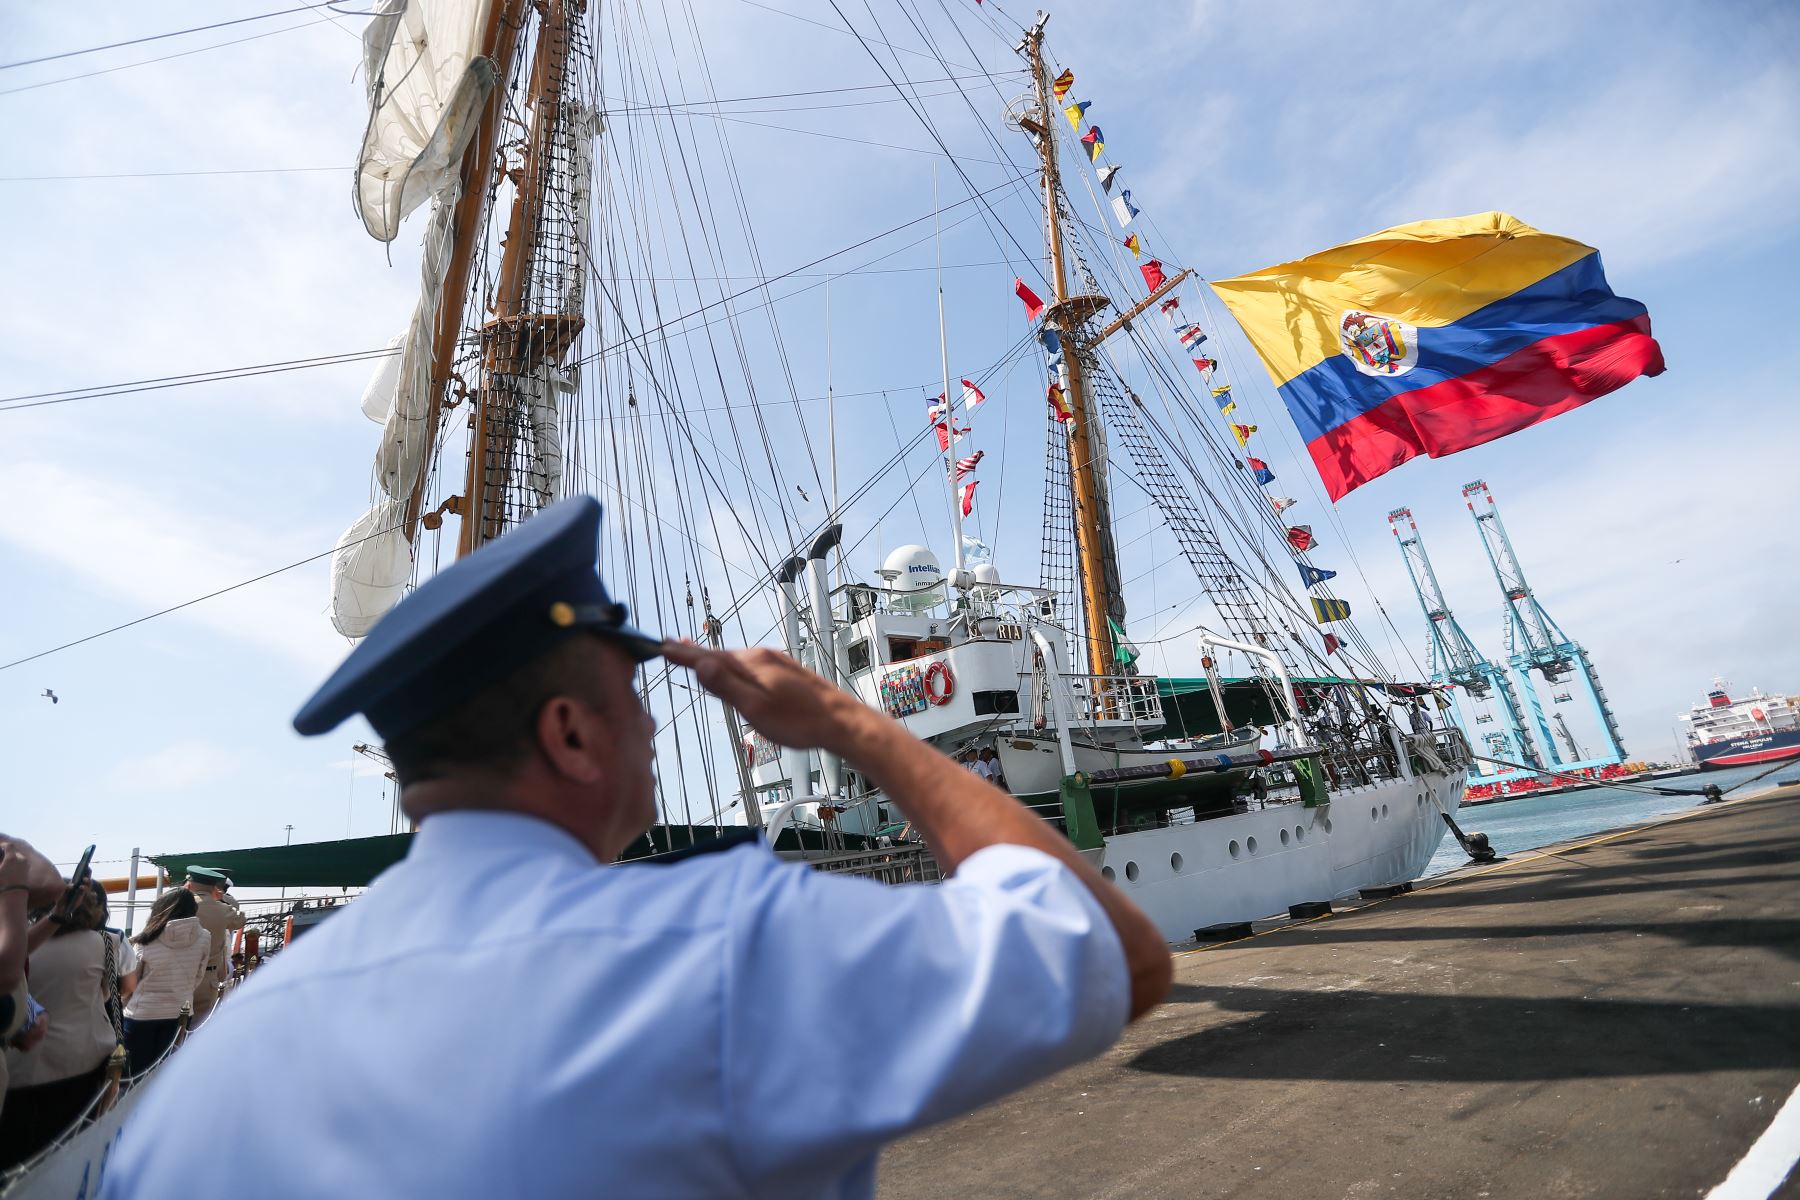 La unidad naval colombiana, es un velero cuya historia se remonta a 1966. Entre sus características, tiene una longitud de 76,8 metros, y tres mástiles de 40 metros. Foto: ANDINA/Ricardo Cuba